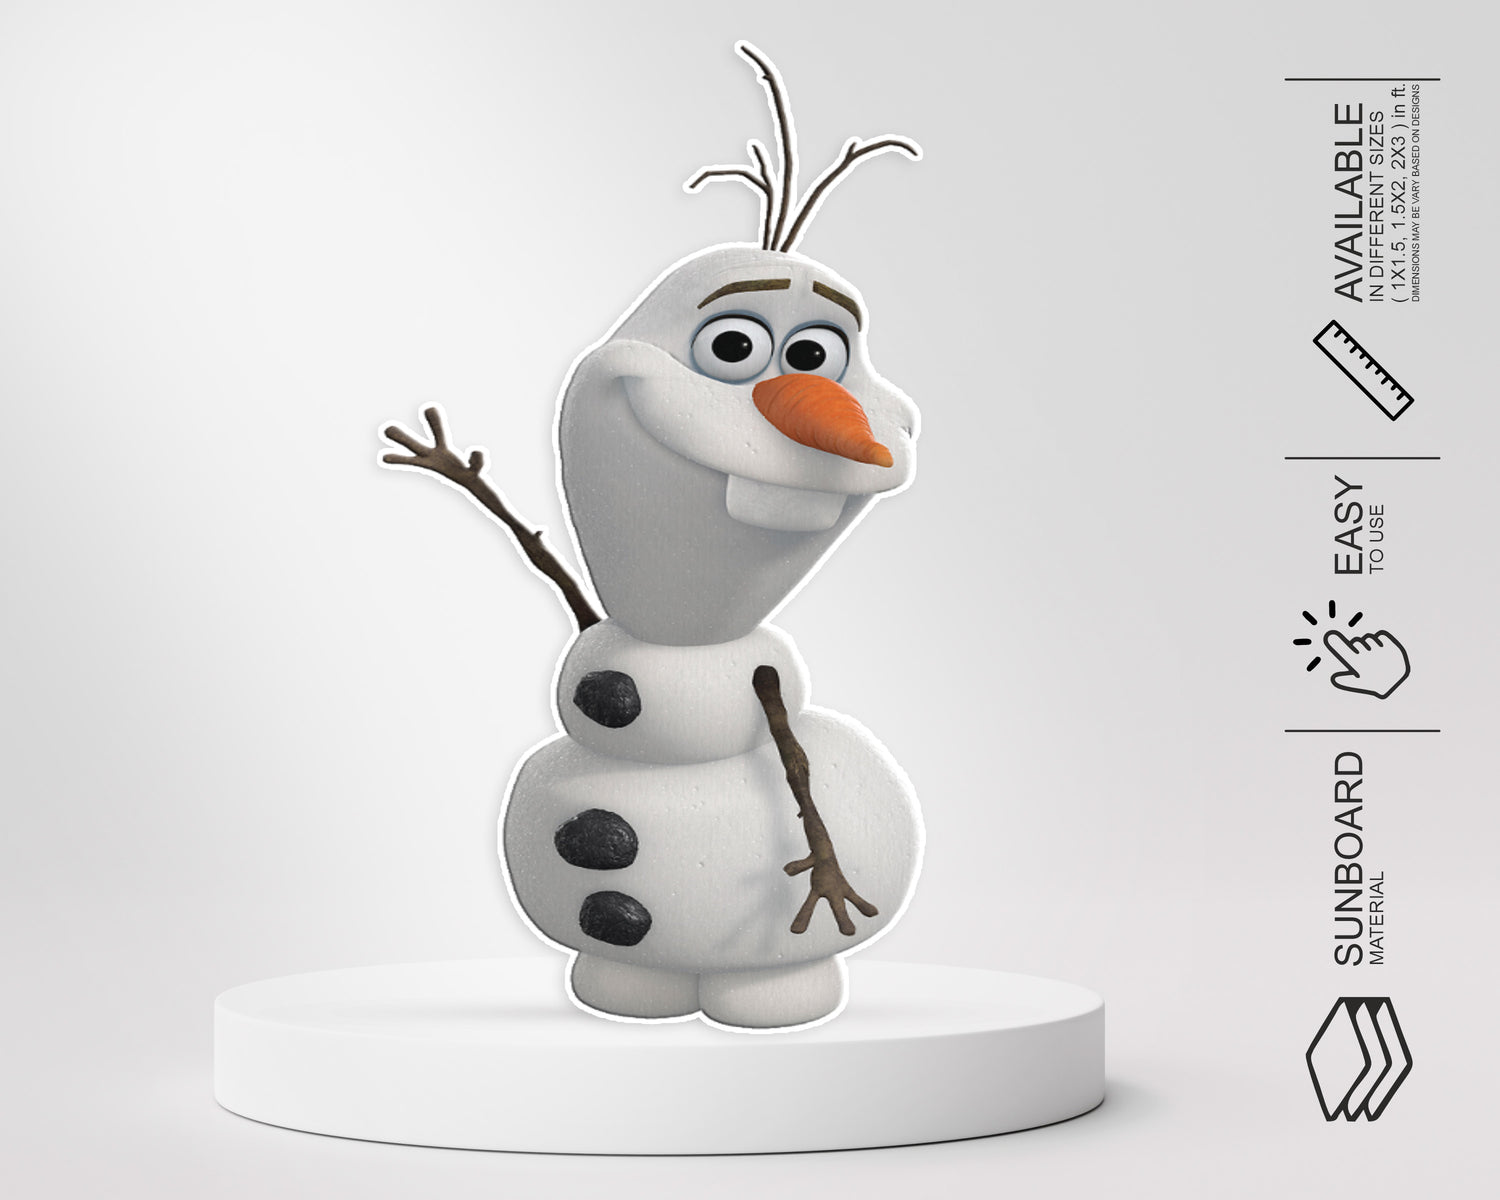 PSI Frozen Theme Cutout - 09